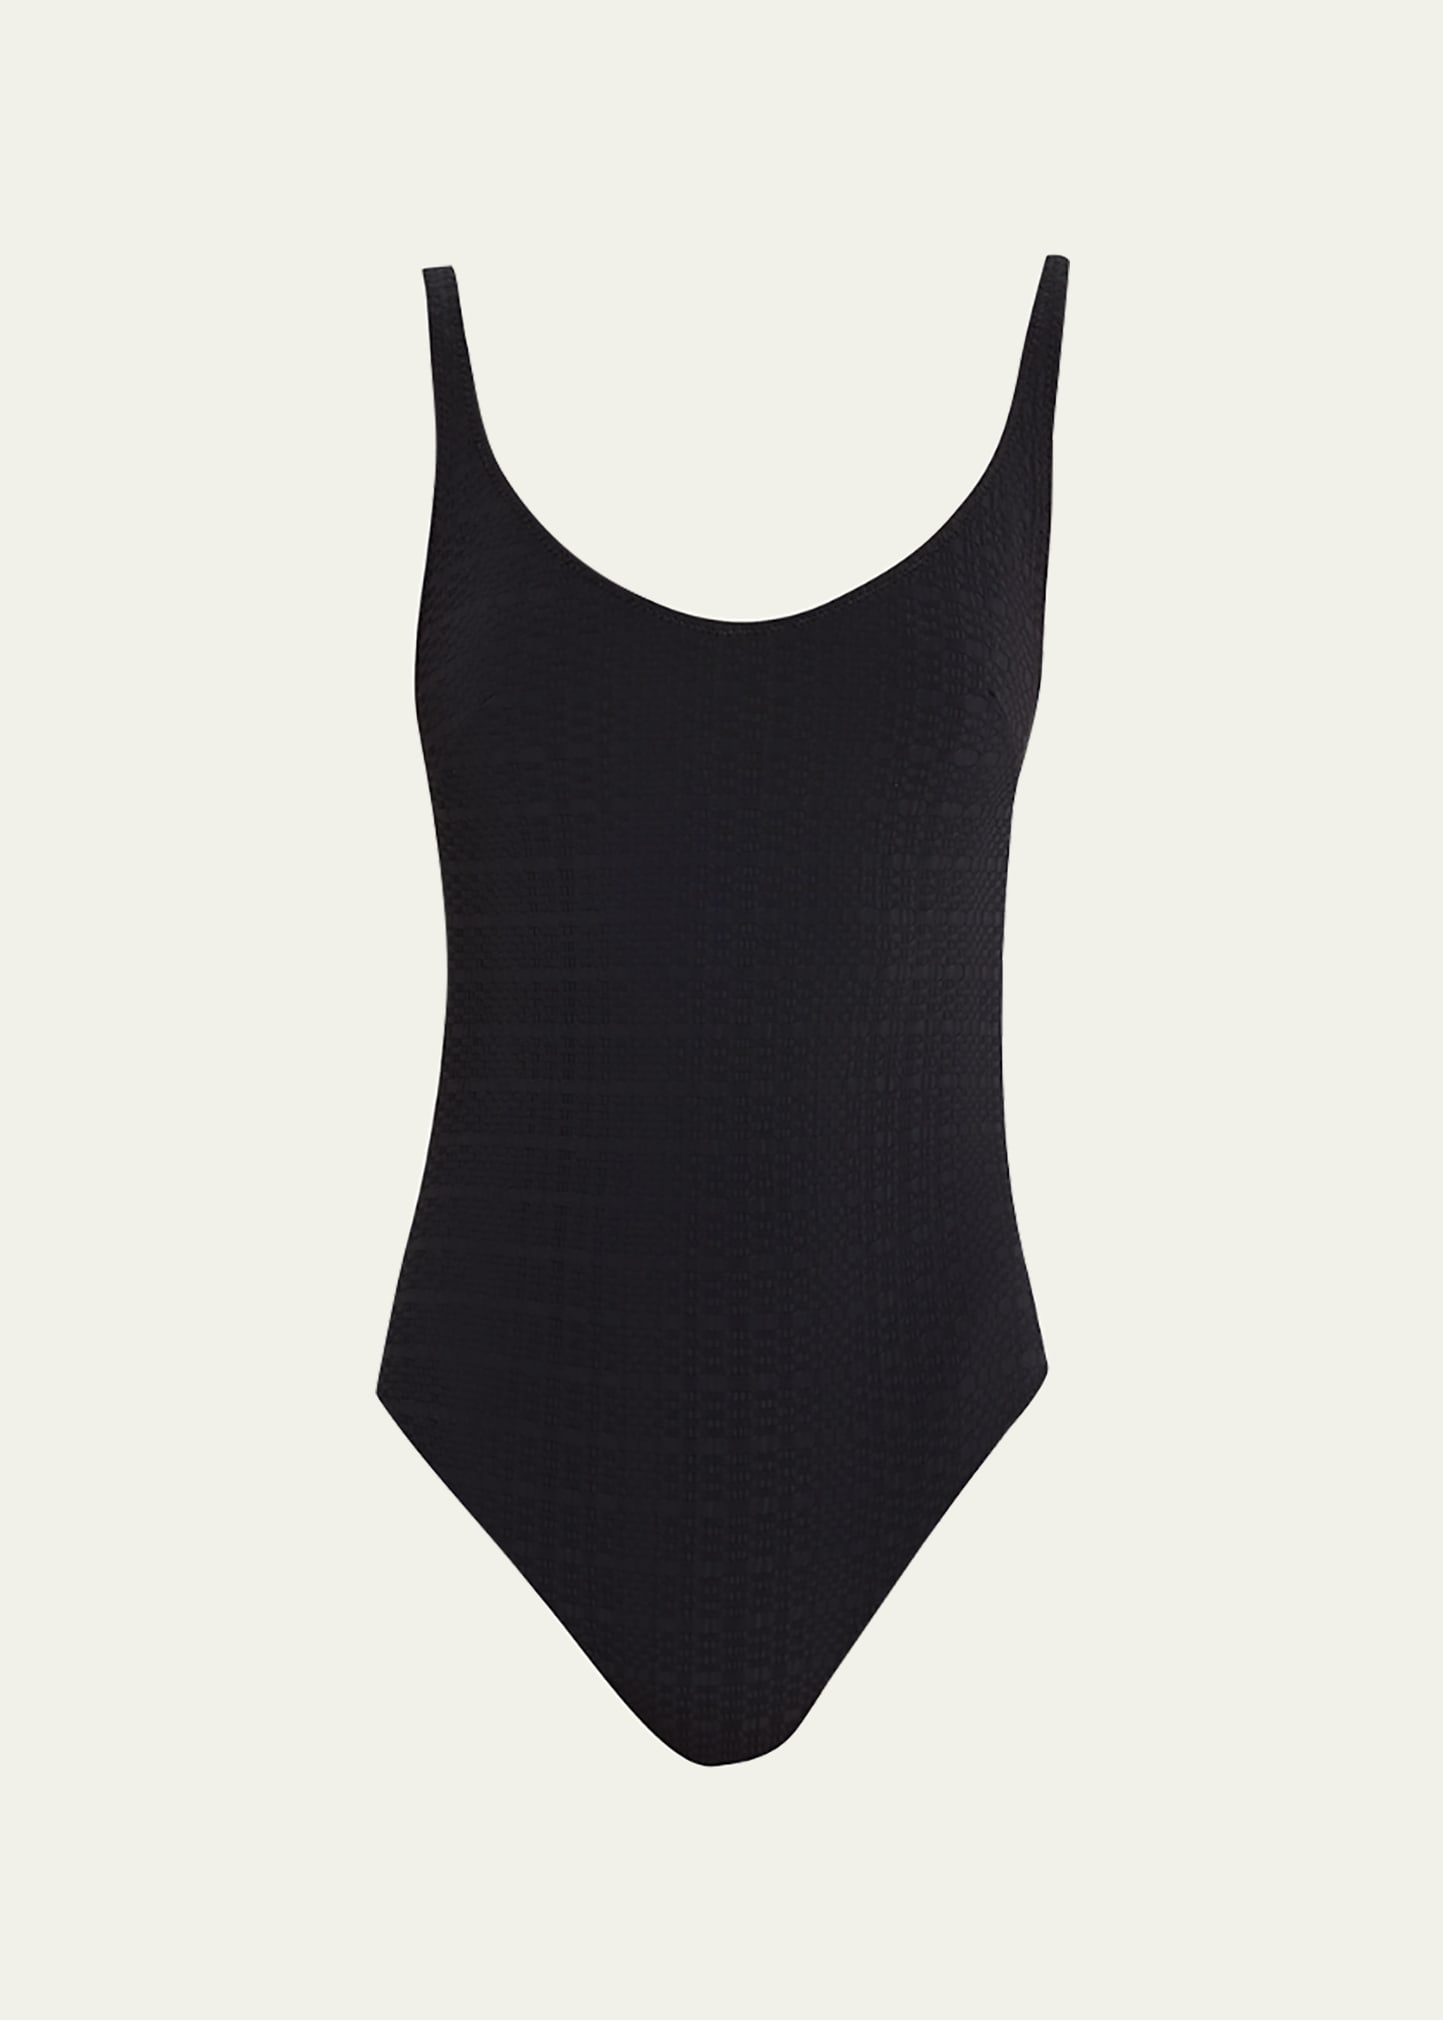 Lisa Marie Fernandez Marilyn Seersucker One-Piece Swimsuit